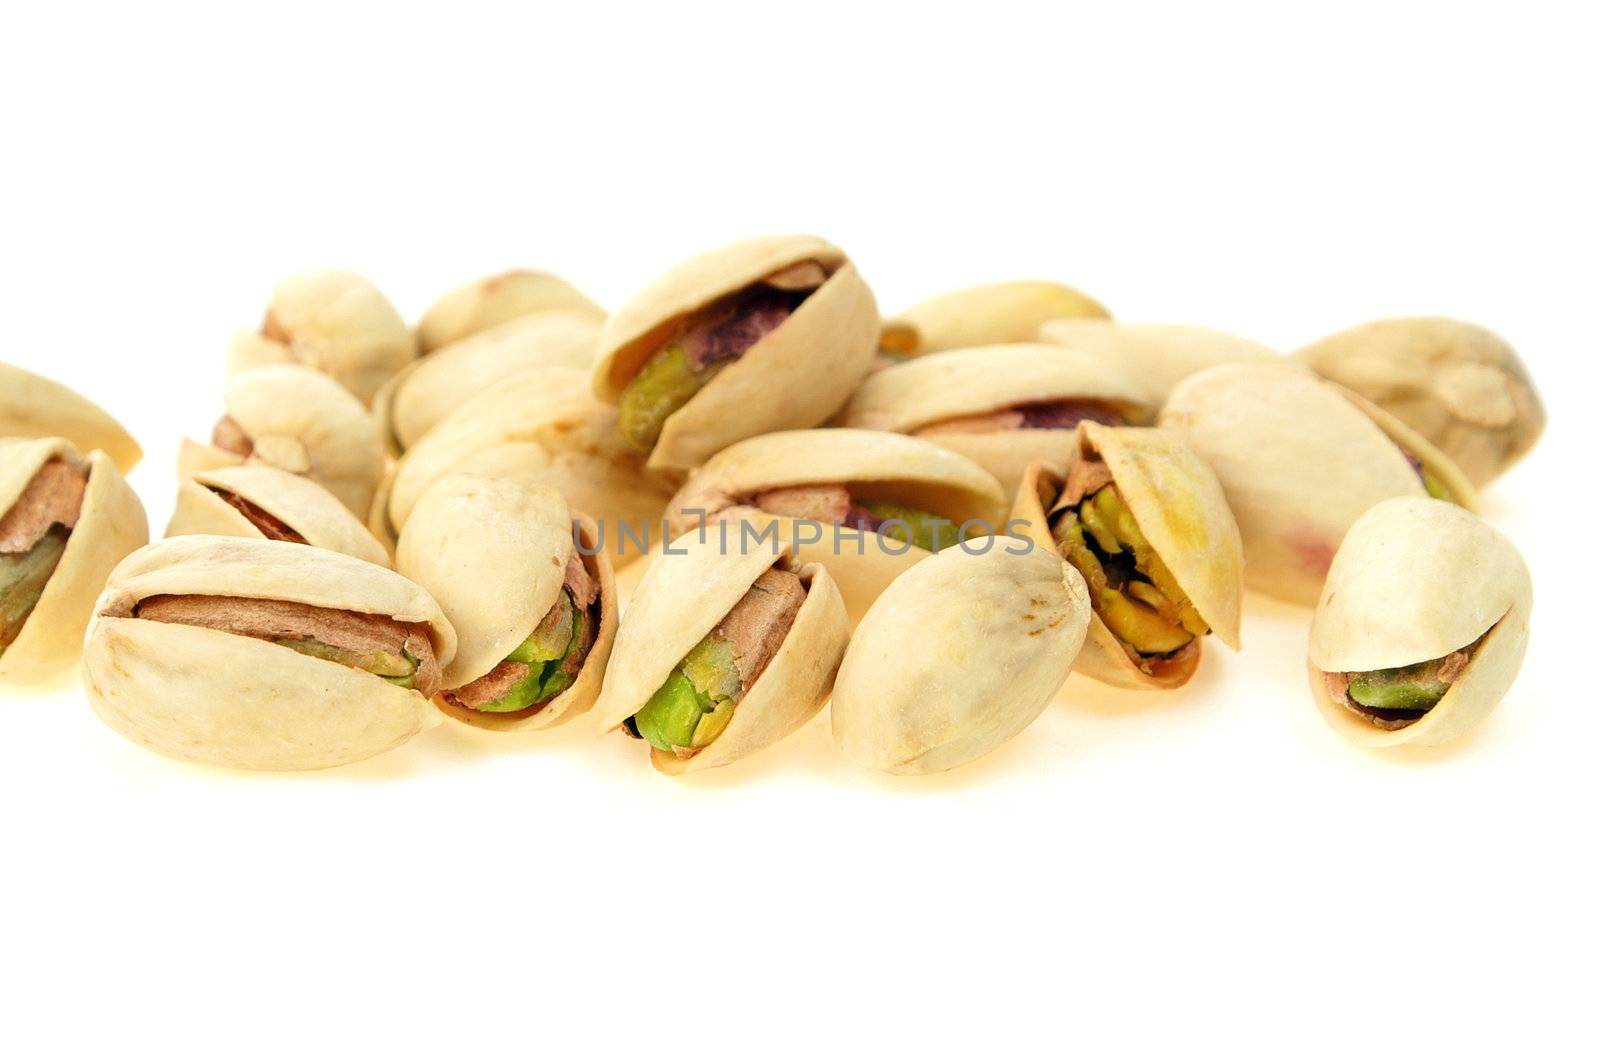 Pistachio nut close-up isolated on white background